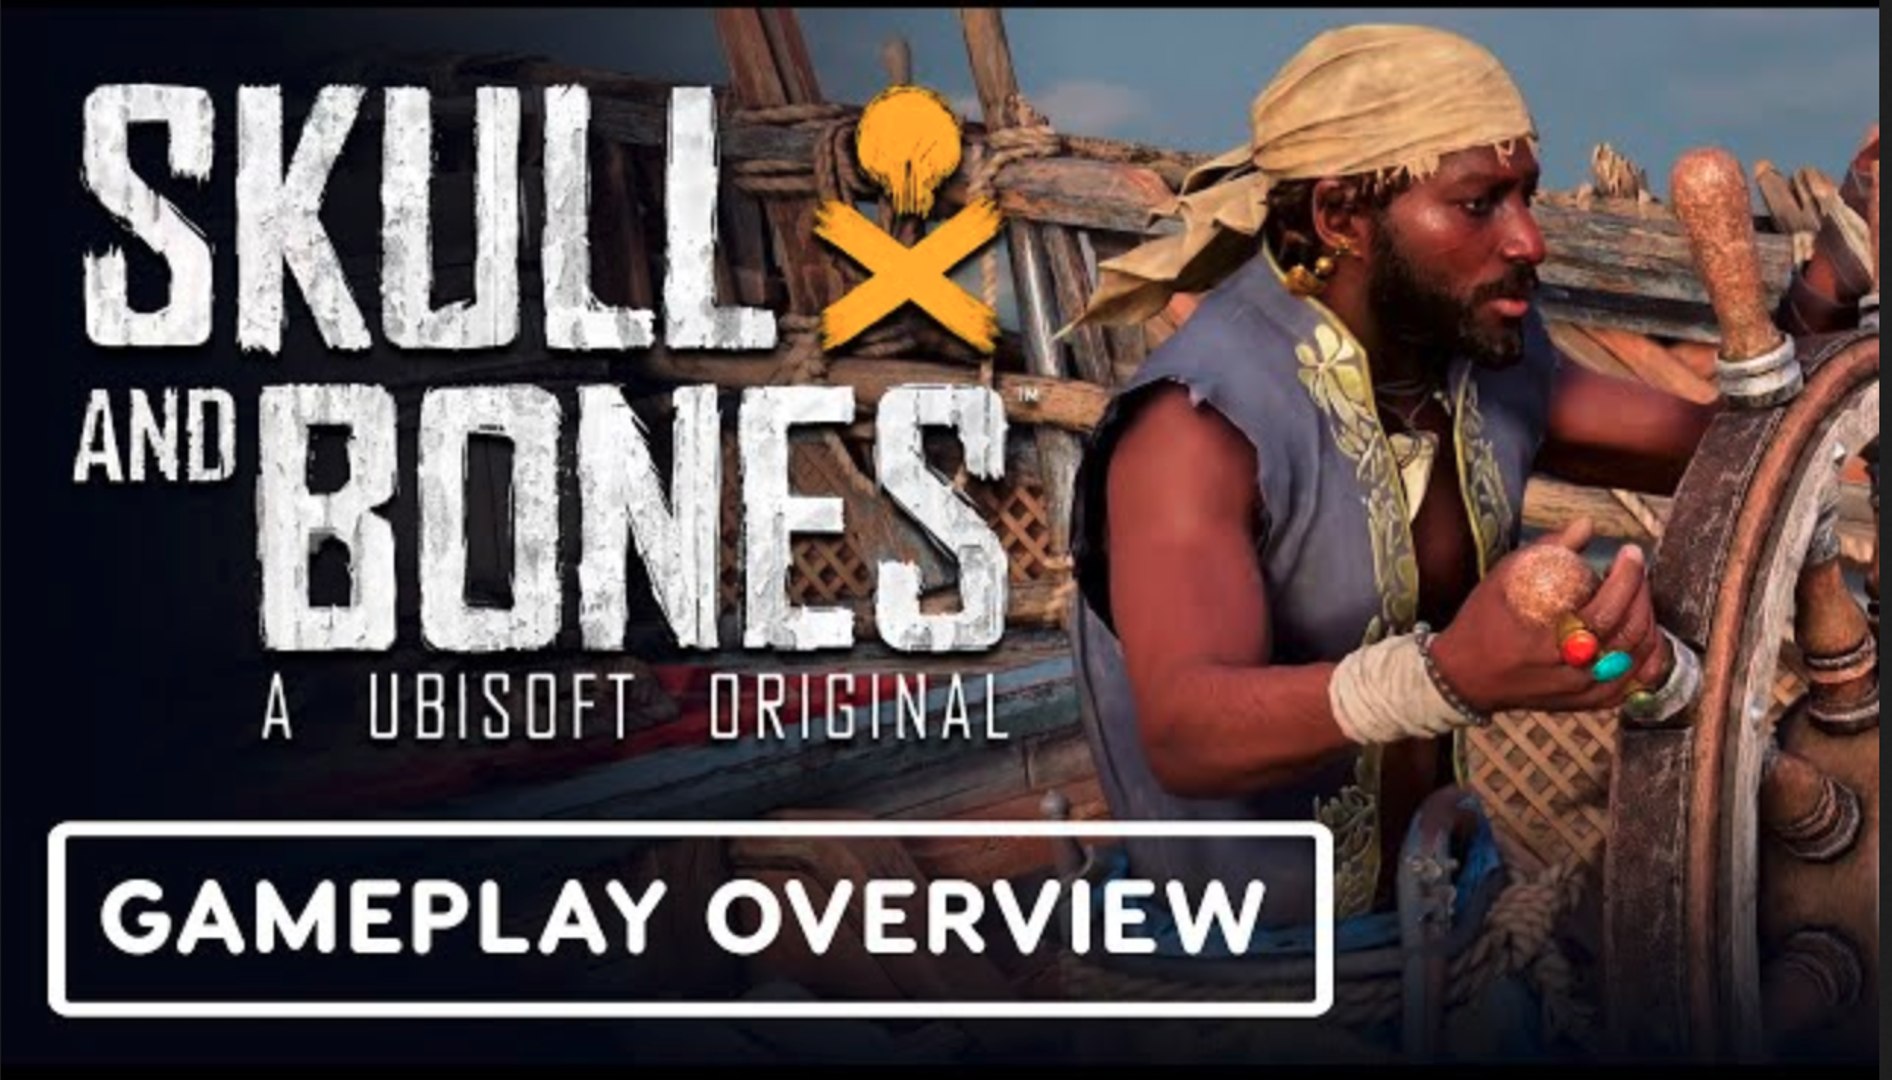 Skull and Bones Gameplay Trailer - Skull and Bones Trailer from E3 2017 